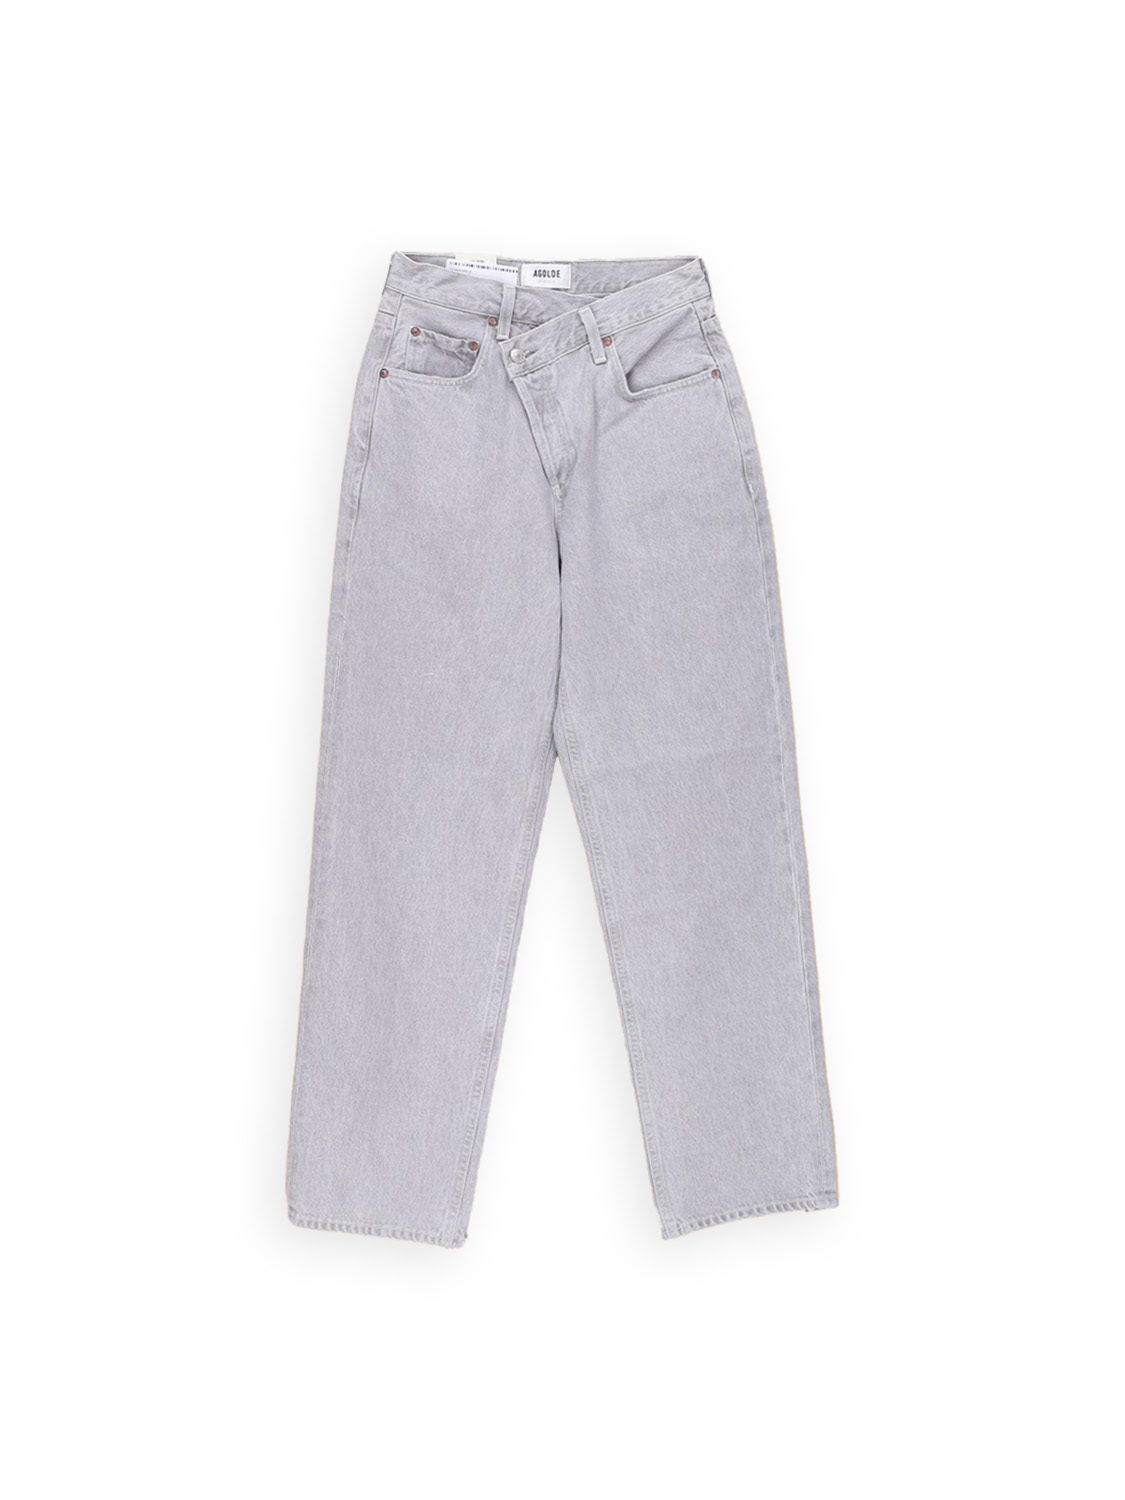 Criss Cross – Mom-Jeans aus Baumwolle mit schrägem Verschluss  